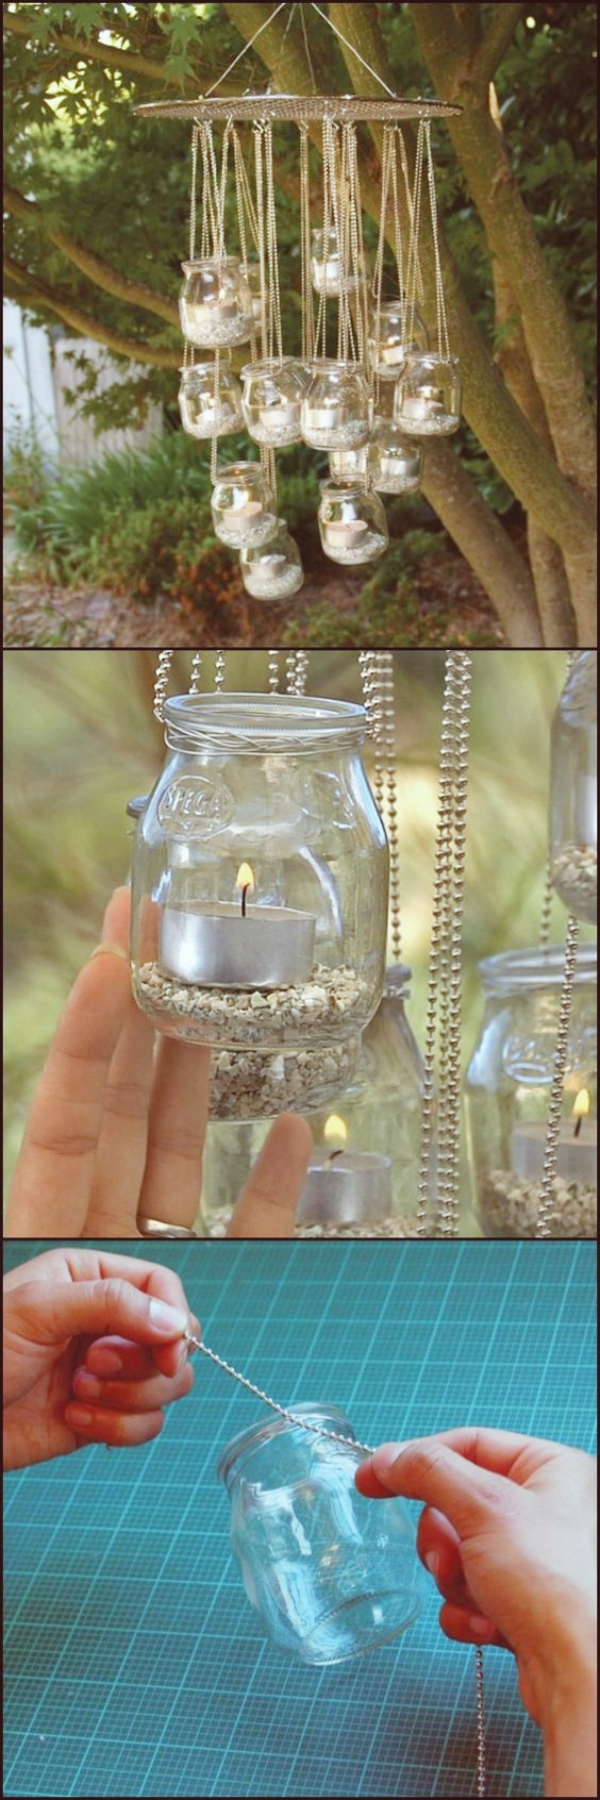 Magical-DIY-Garden-Lantern-Ideas-feature